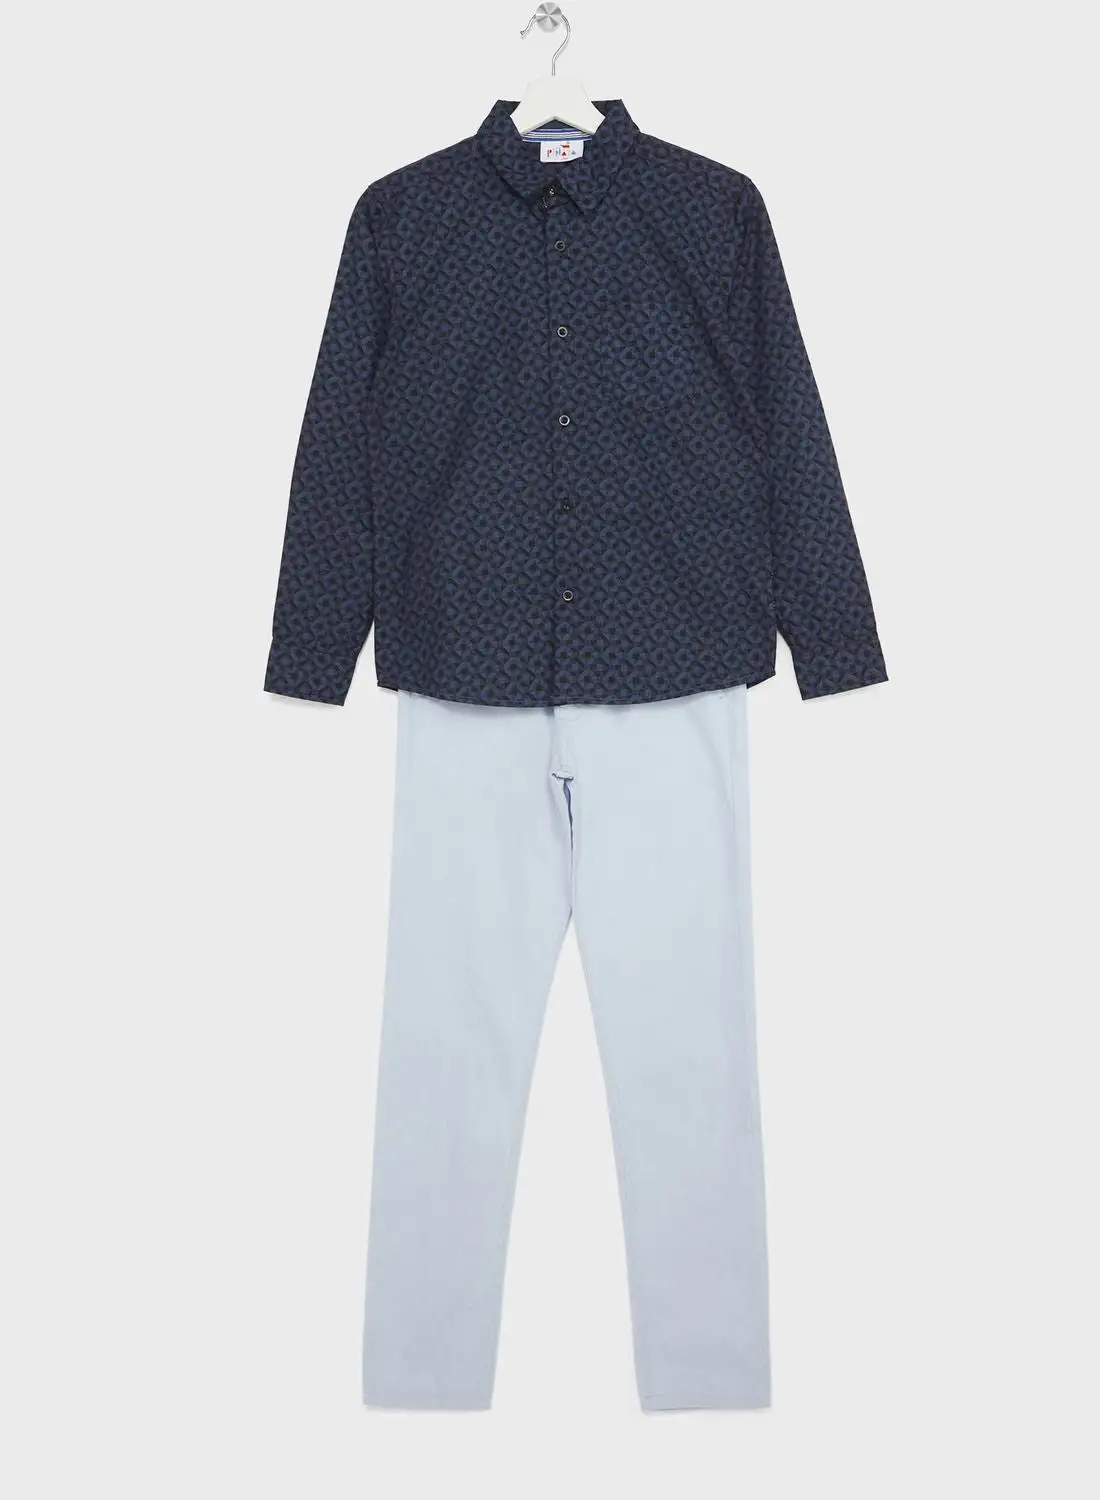 Pinata Boys Granded Collar Printed Shirt And Pant Set